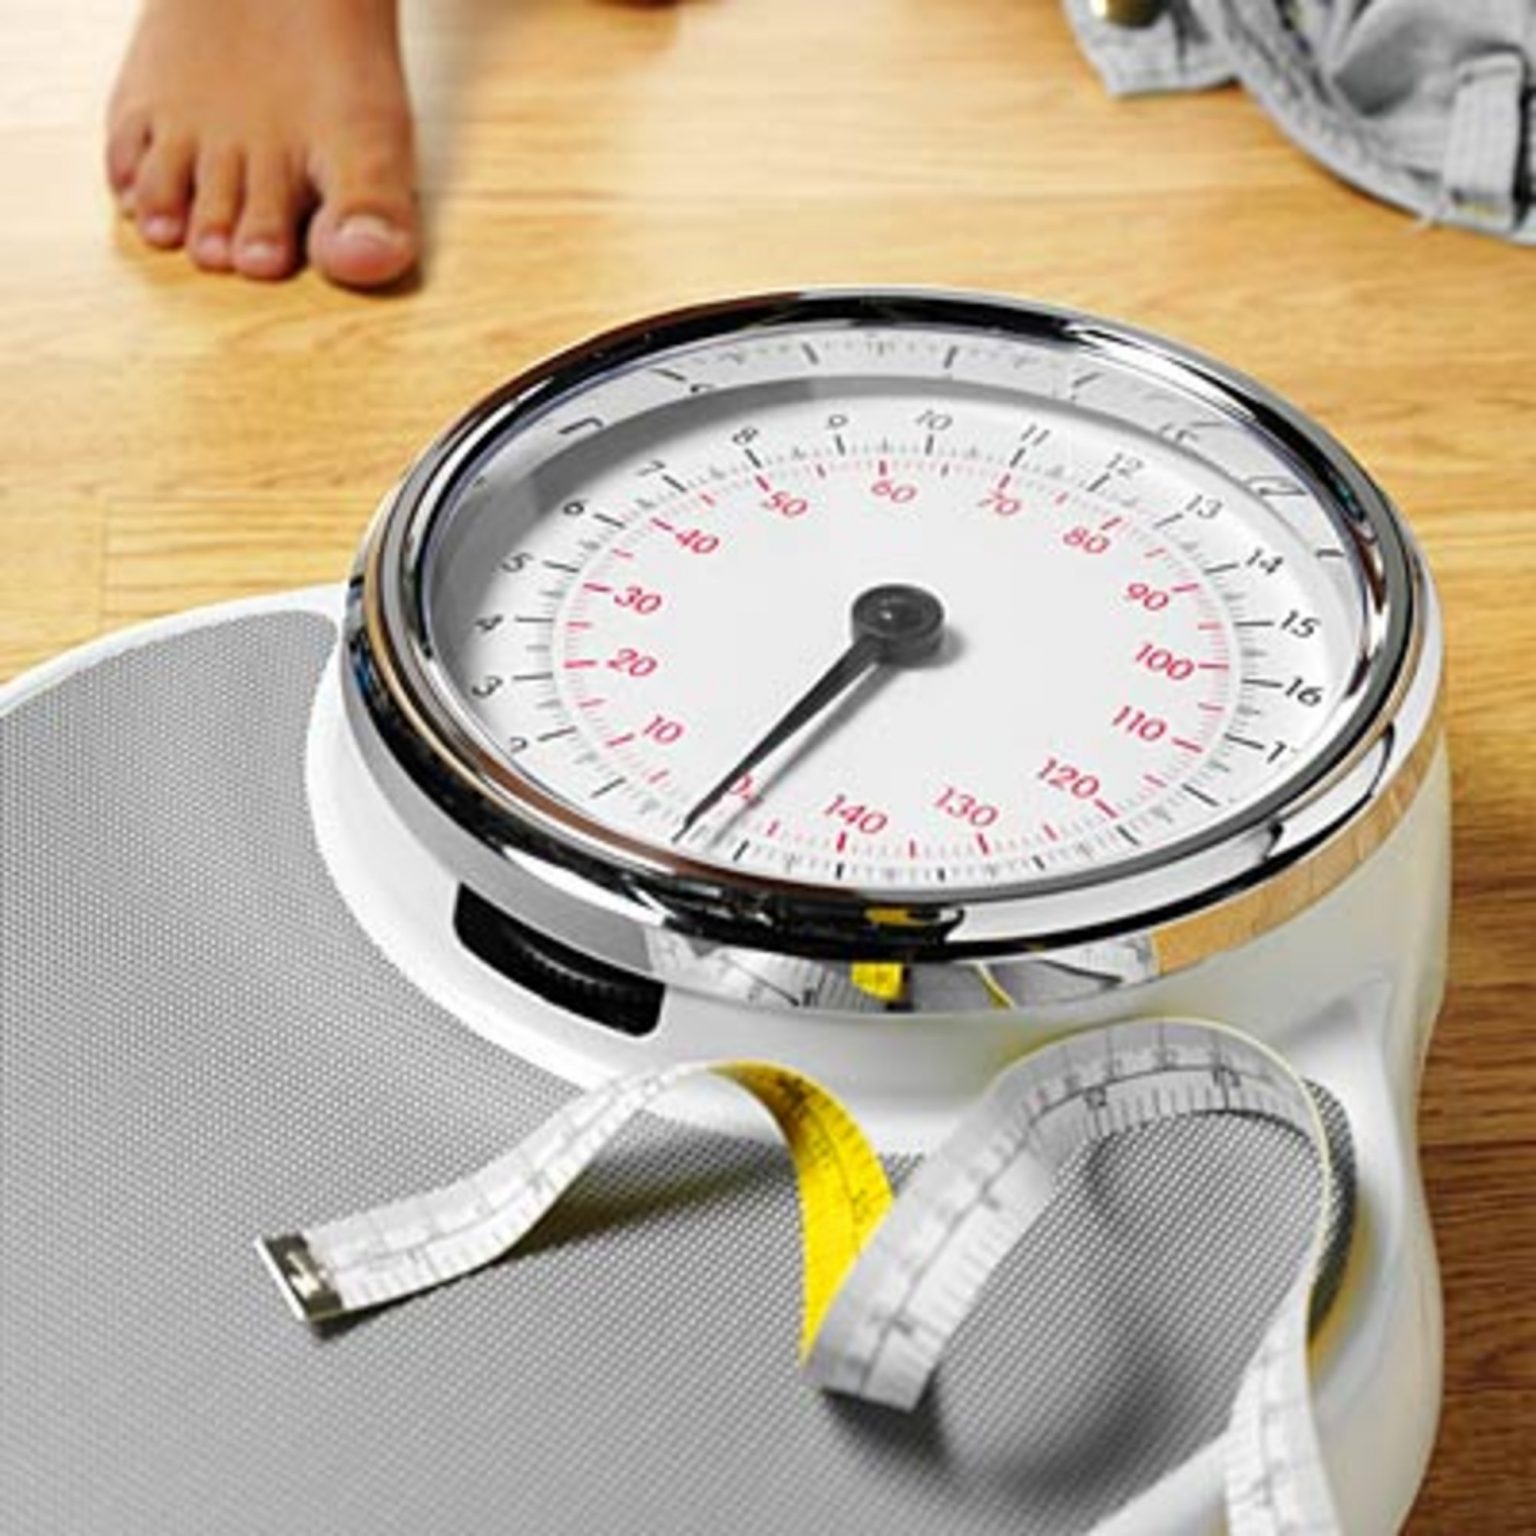 کاهش وزن با رژیم کتوژنیک